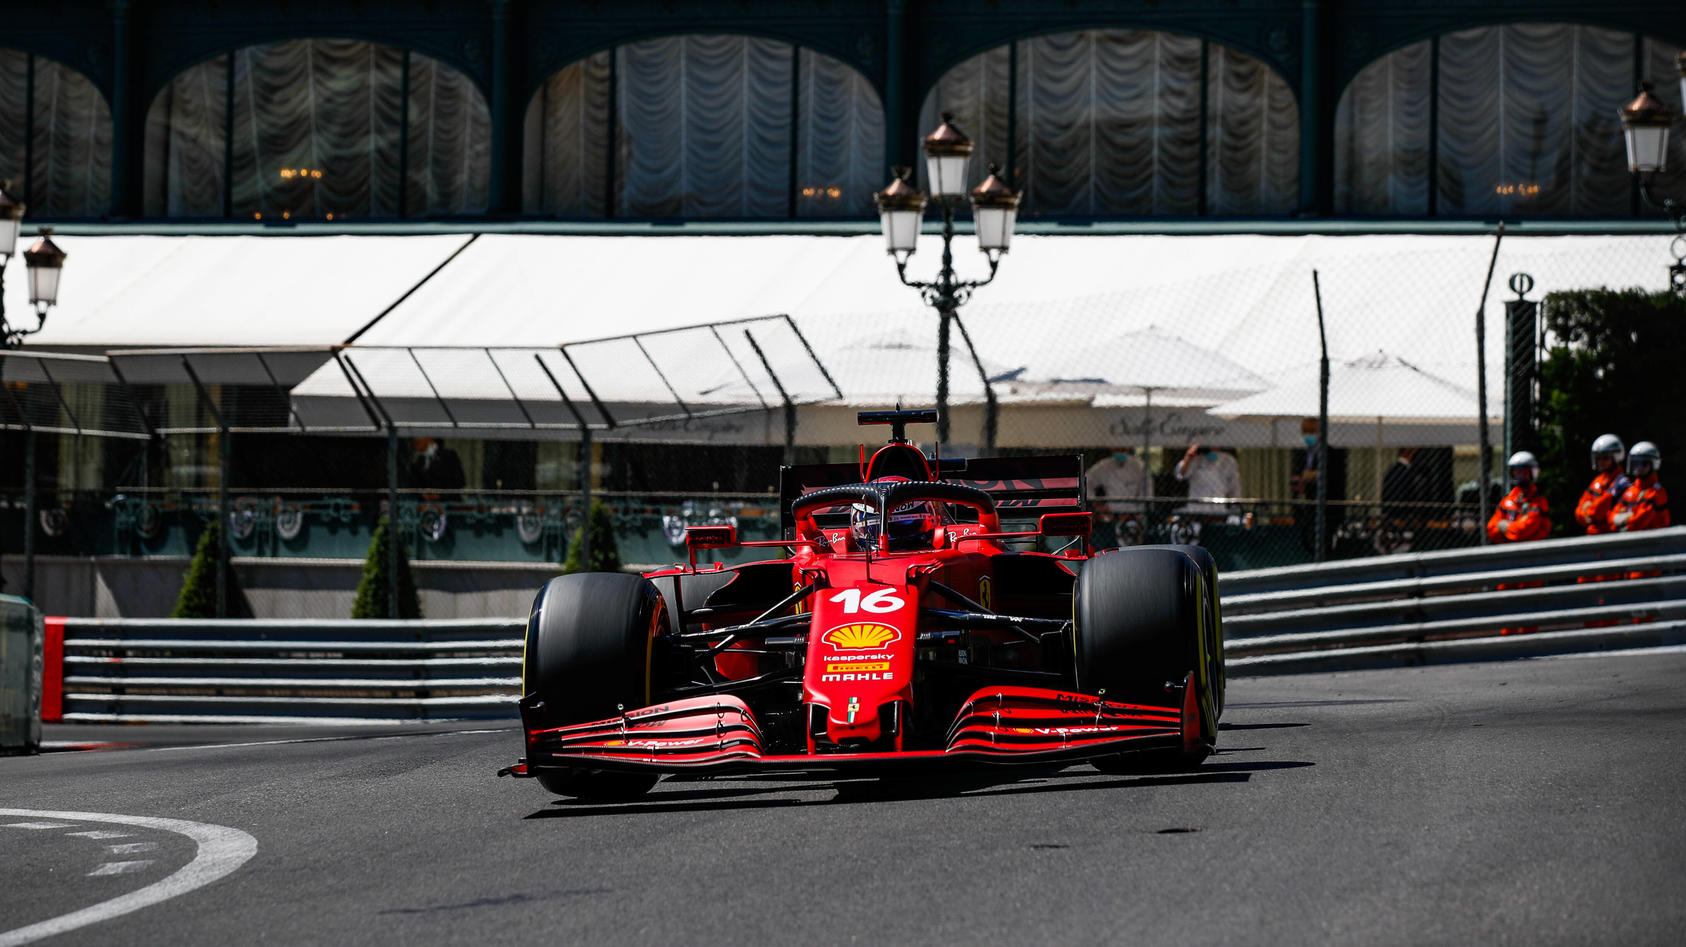 Formel 1 Ferrari-Pilot Charles Leclerc nach Trainings-Bestzeit in Monaco plötzlich Geheimfavorit